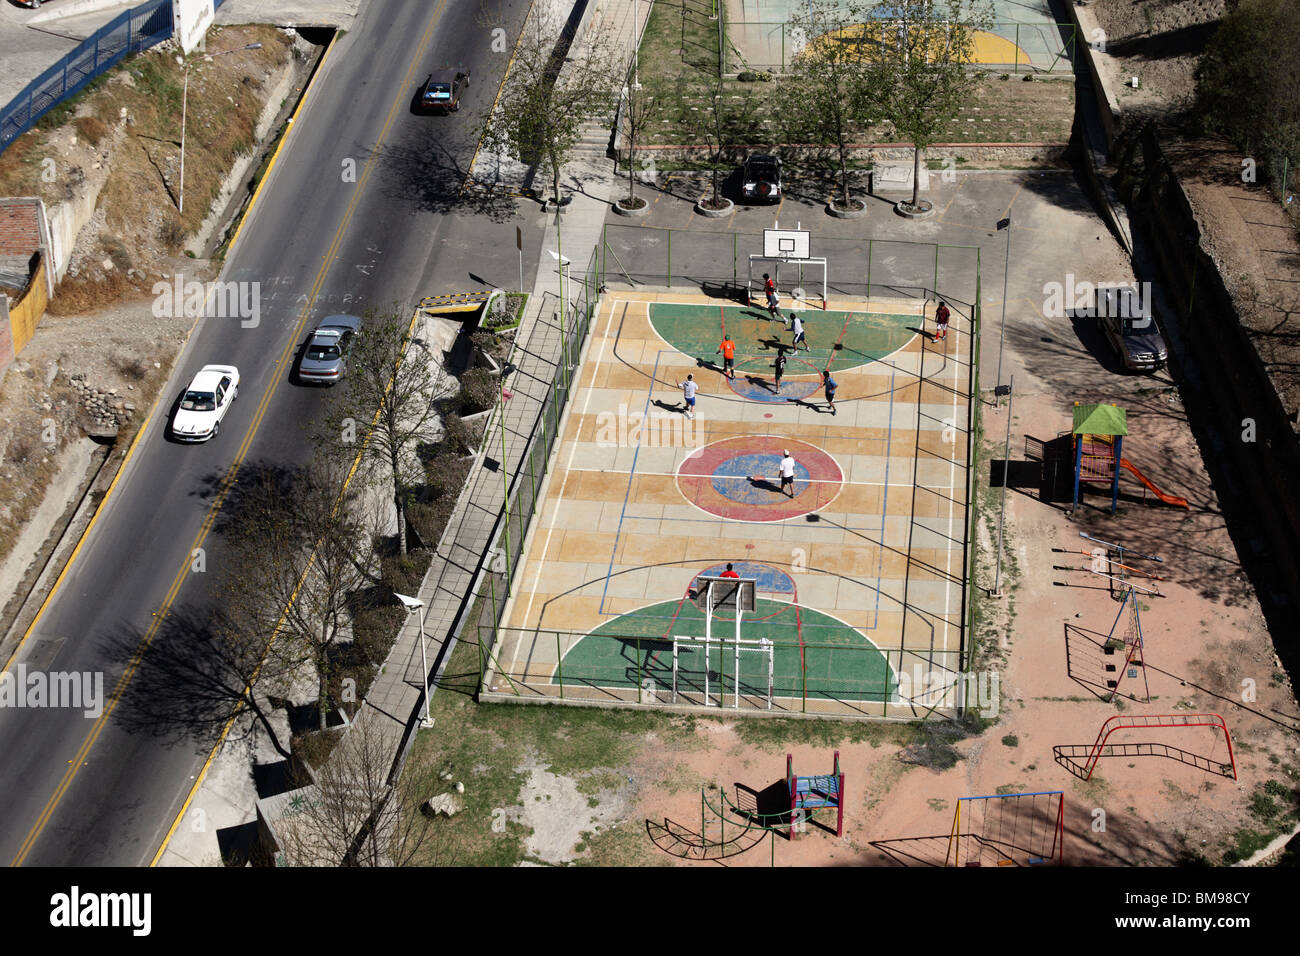 Vue aérienne des terrains de football en béton avec terrains de basket-ball dans le Parque Urbano Central à côté de l'Avenida del Poeta, la Paz, Bolivie. Banque D'Images